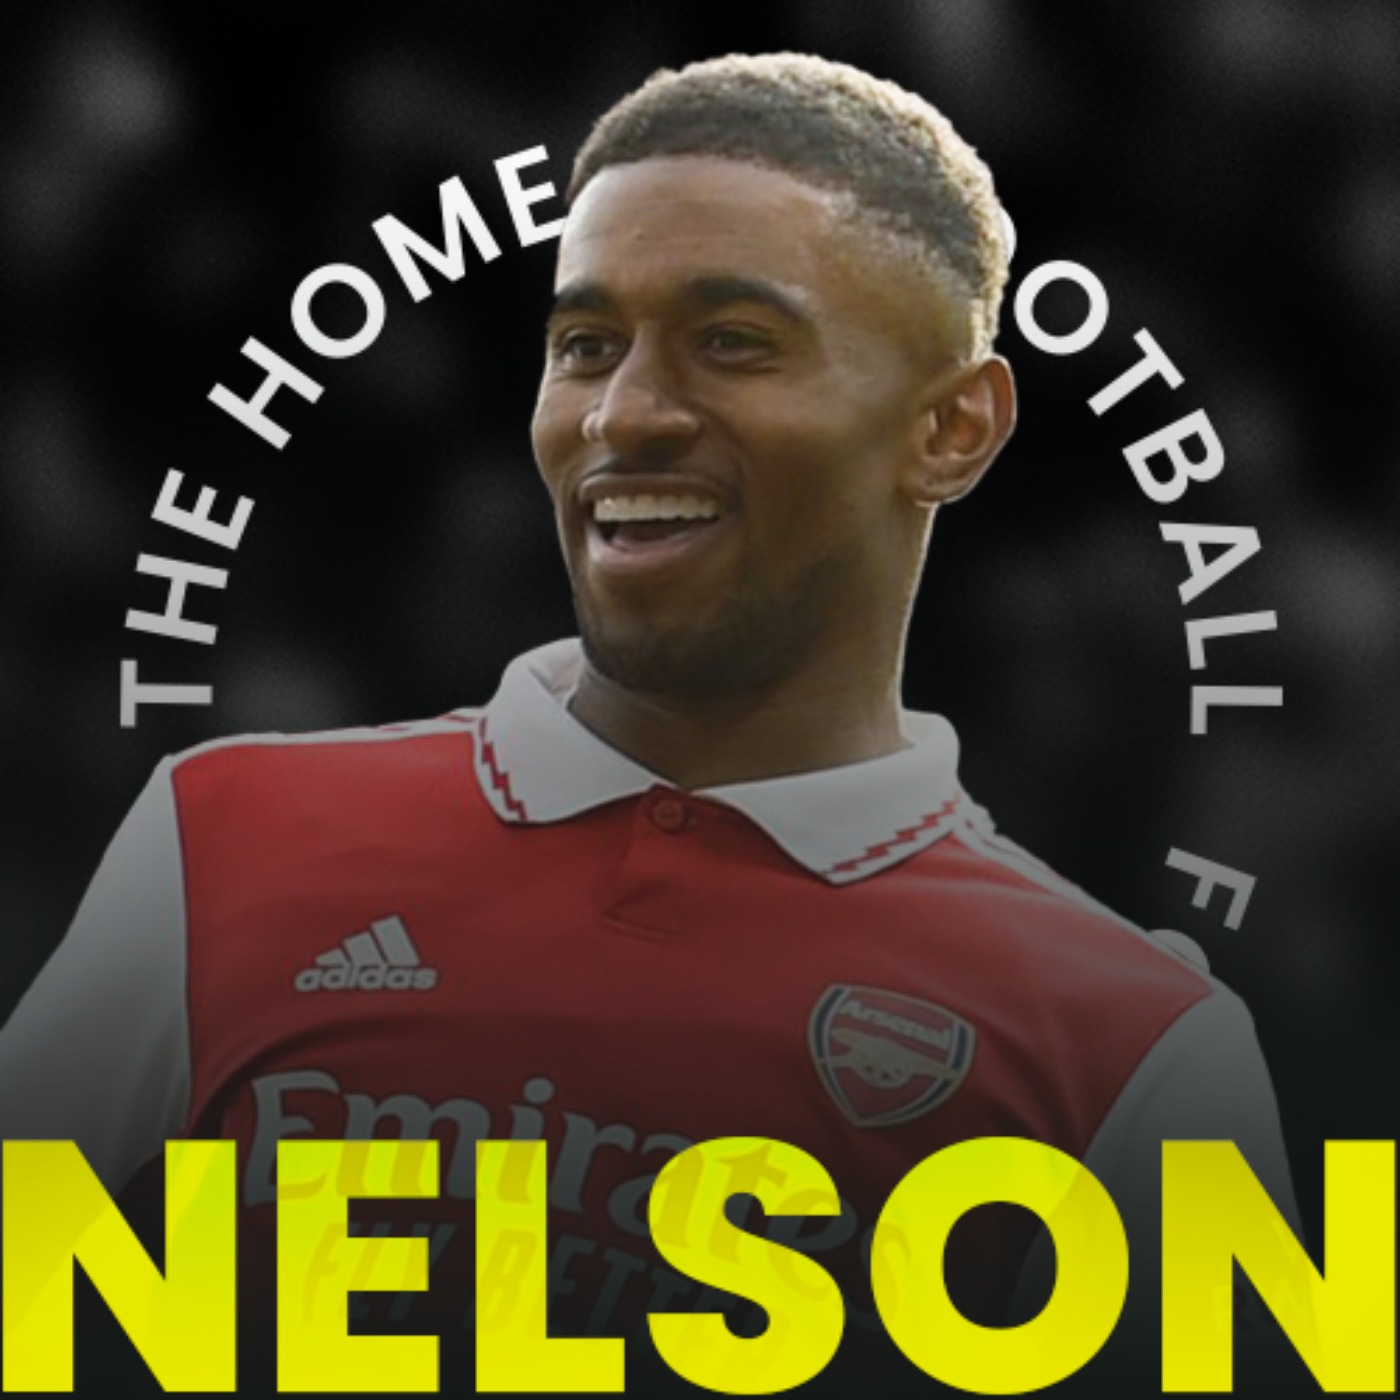 Meet Arsenal's Reiss Nelson